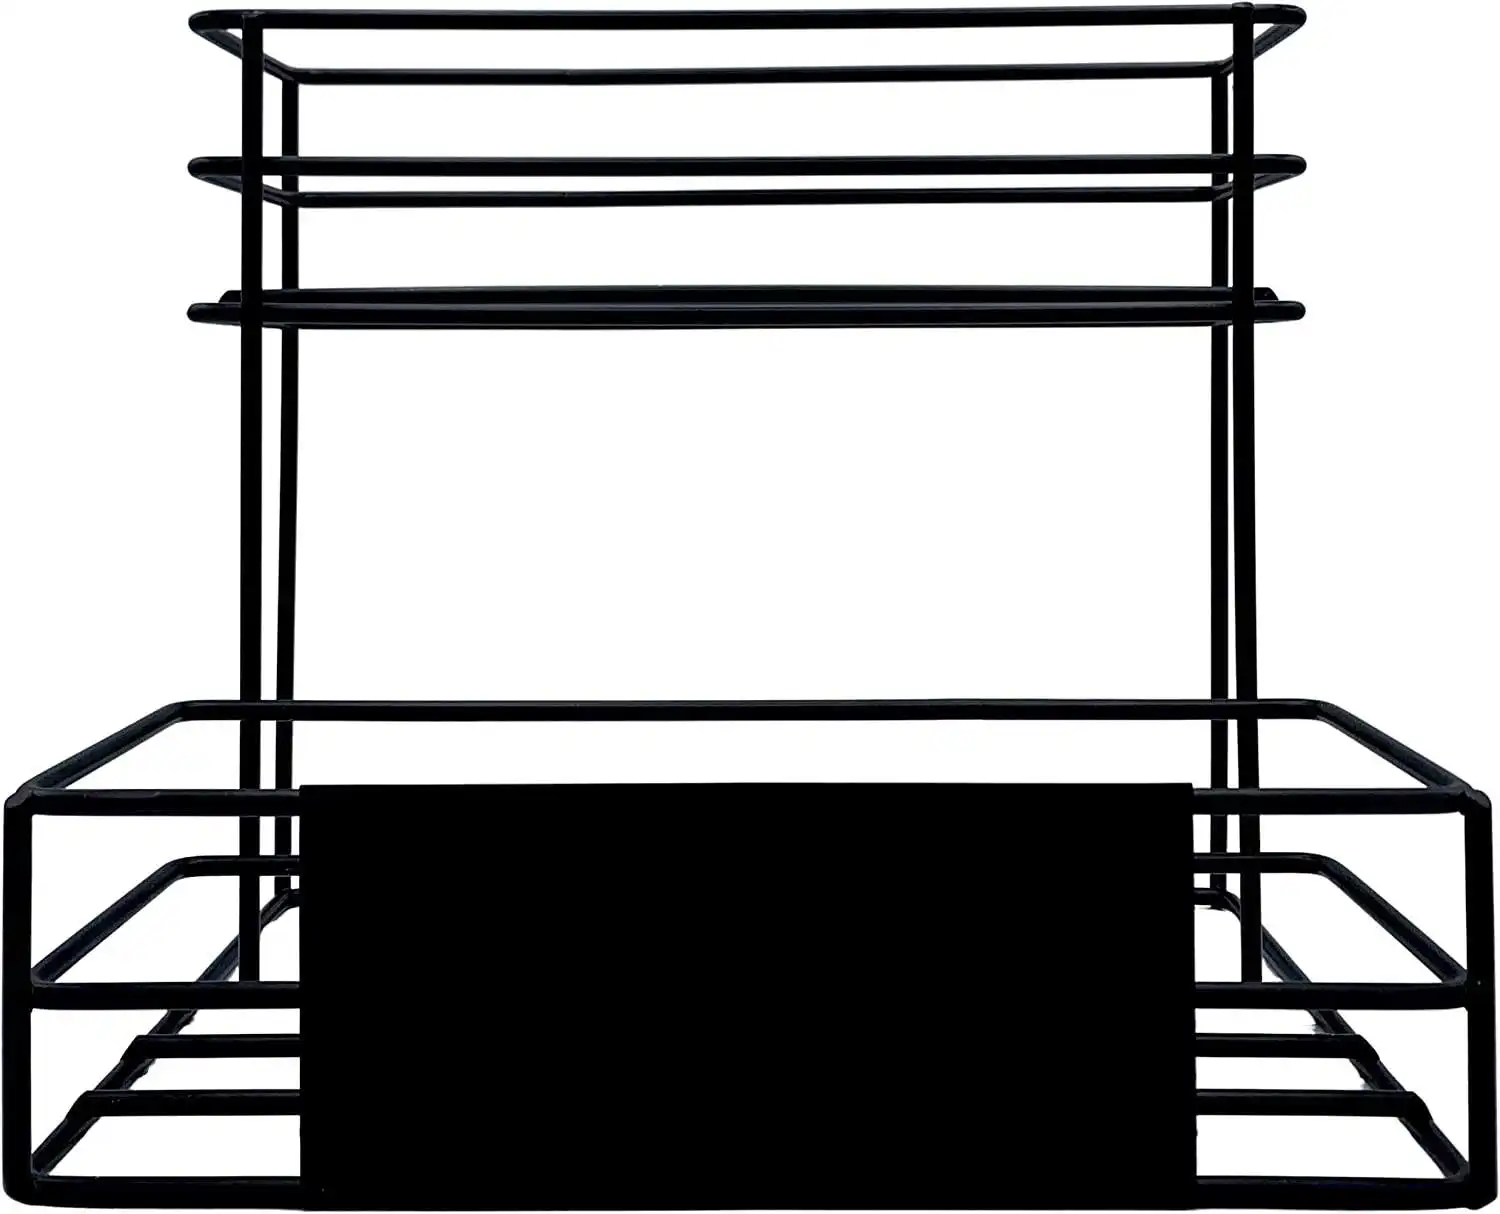 Fabbrica di buona qualità direttamente a casa scaffalatura espositore in metallo rack Bar porta scaffale per soddisfare esigenze diverse